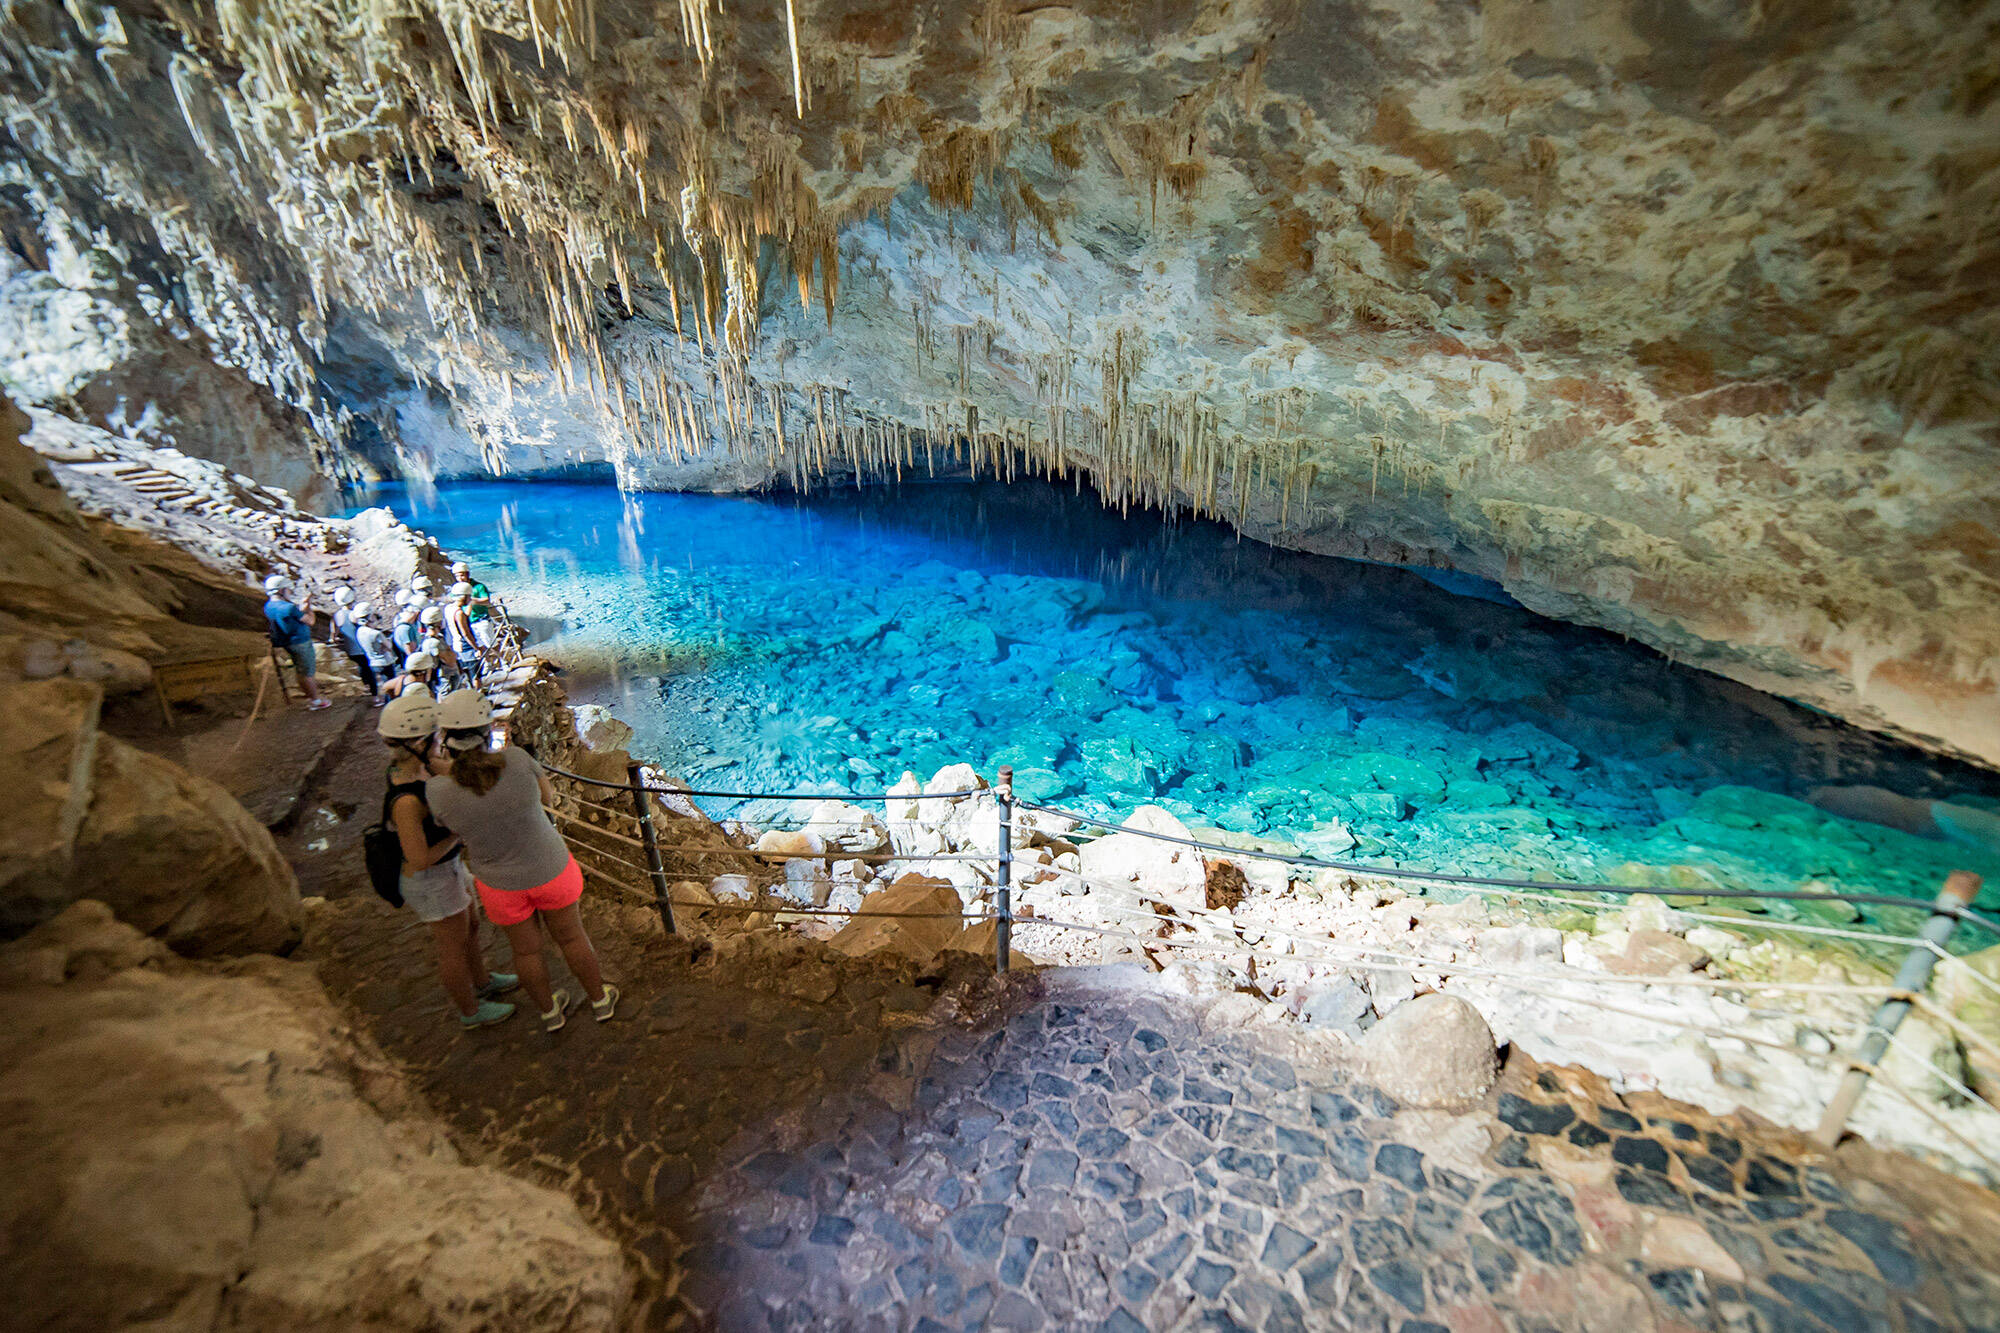 De cavernas a rapel em cachoeiras, há muito o que fazer em Bonito, mesmo que você só passe três dias por lea. Foto: Divulgação/Bonitour Viagens